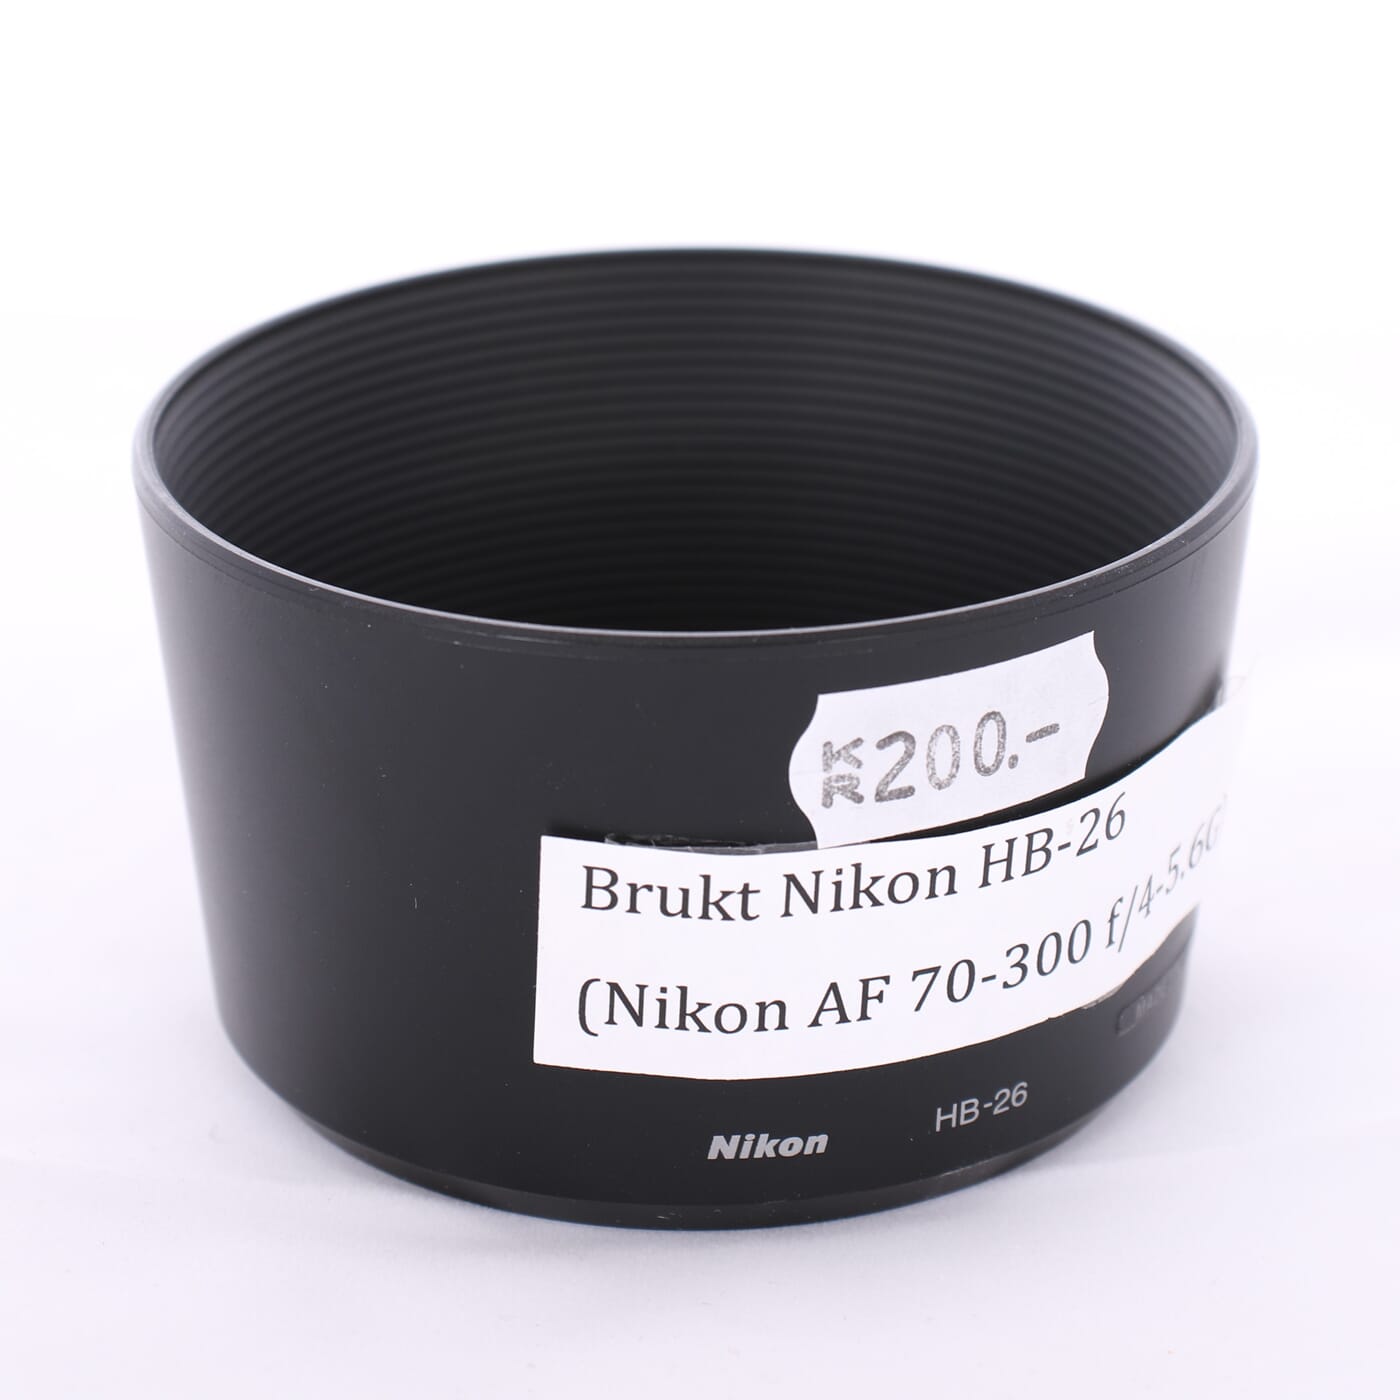 Brukt Nikon HB-26 (Nikon AF 70-300 f/4-5.6G)